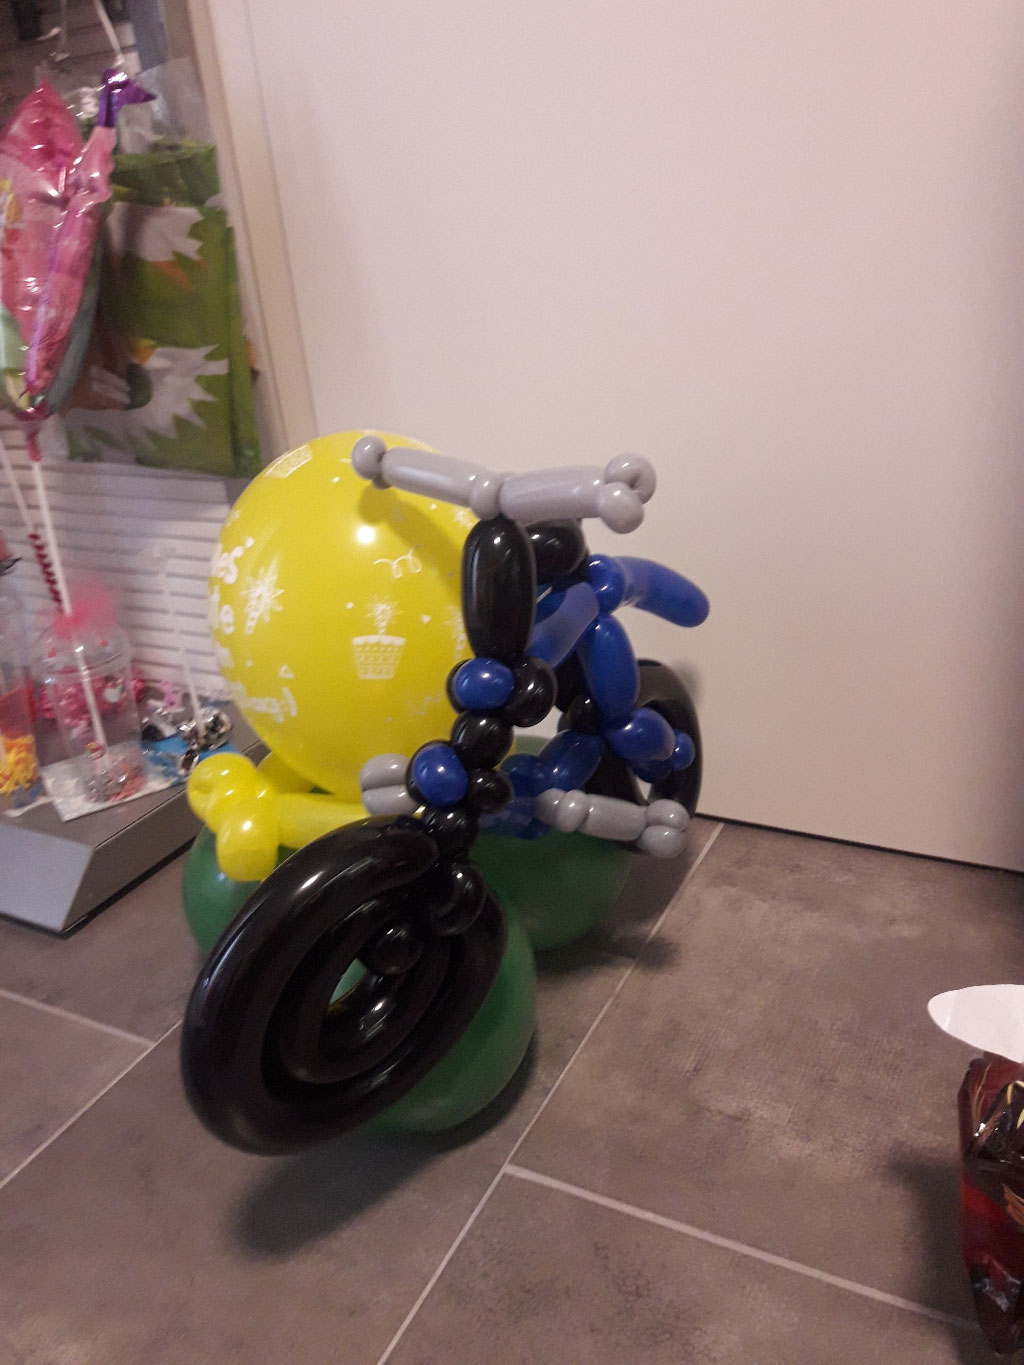 Fahrrad mit Motivballon - Preis 17,50 €  /  mit Person -Preis 22,50 €